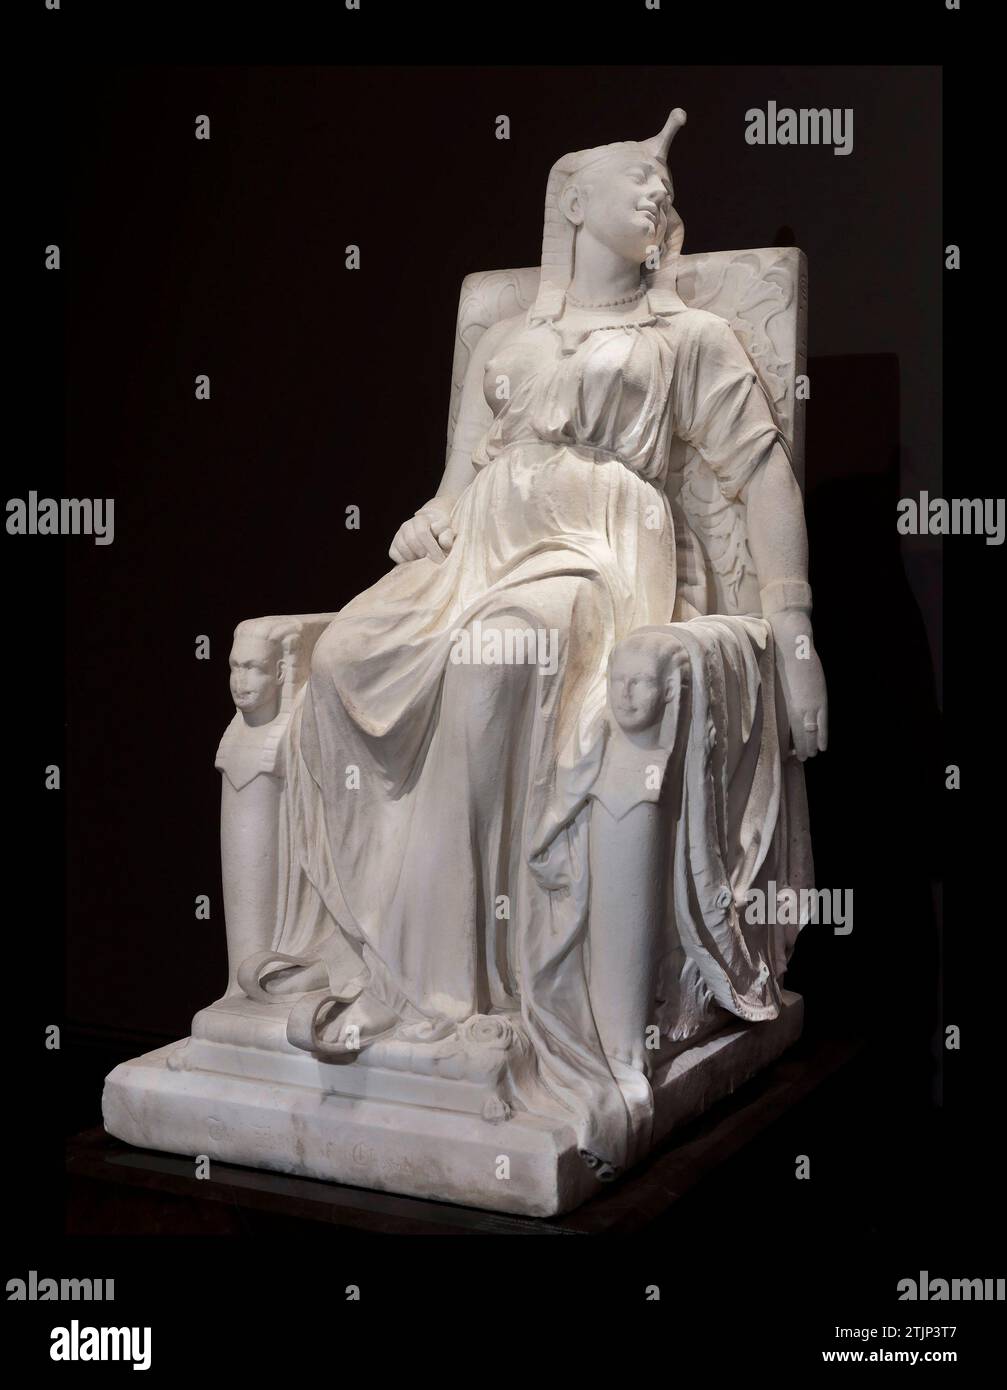 Der Tod von Cleopatra durch die Bildhauerin Edmonia Lewis. Kleopatra (69-30 v. Chr.), die legendäre Königin von Ägypten von 51-30 v. Chr., ist oft am bekanntesten für ihren dramatischen Selbstmord, angeblich durch den tödlichen Biss einer giftigen Schlange. Hier porträtierte Edmonia Lewis Kleopatra im Moment nach ihrem Tod in königlicher Kleidung in majestätischer Ruhe auf einem Thron. Die identischen Sphinxköpfe, die den Thron flankieren, repräsentieren die Zwillinge, die sie mit dem römischen General Marc Antonius getragen hat. Eine optimierte Version eines Bildes einer Originalskulptur im Smithsonian American Art Museum, Stockfoto